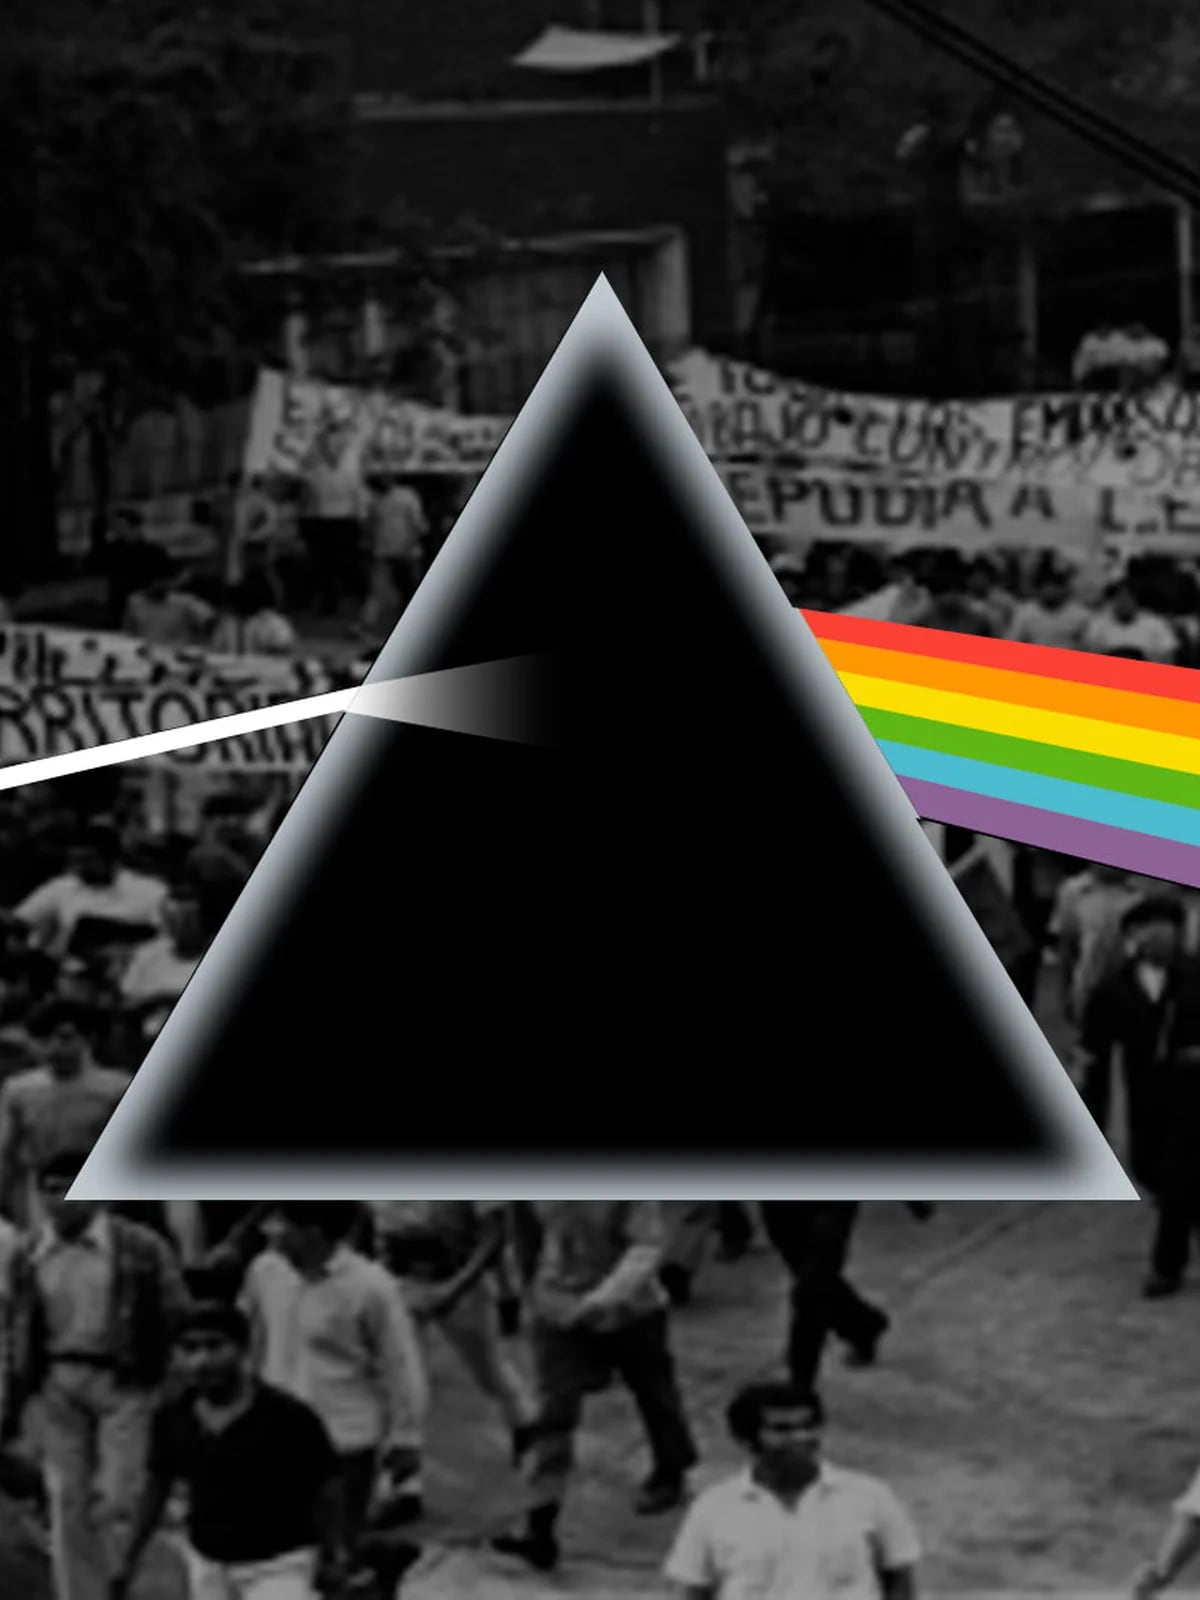 A 50 años de 'The Dark Side of the Moon' de Pink Floyd